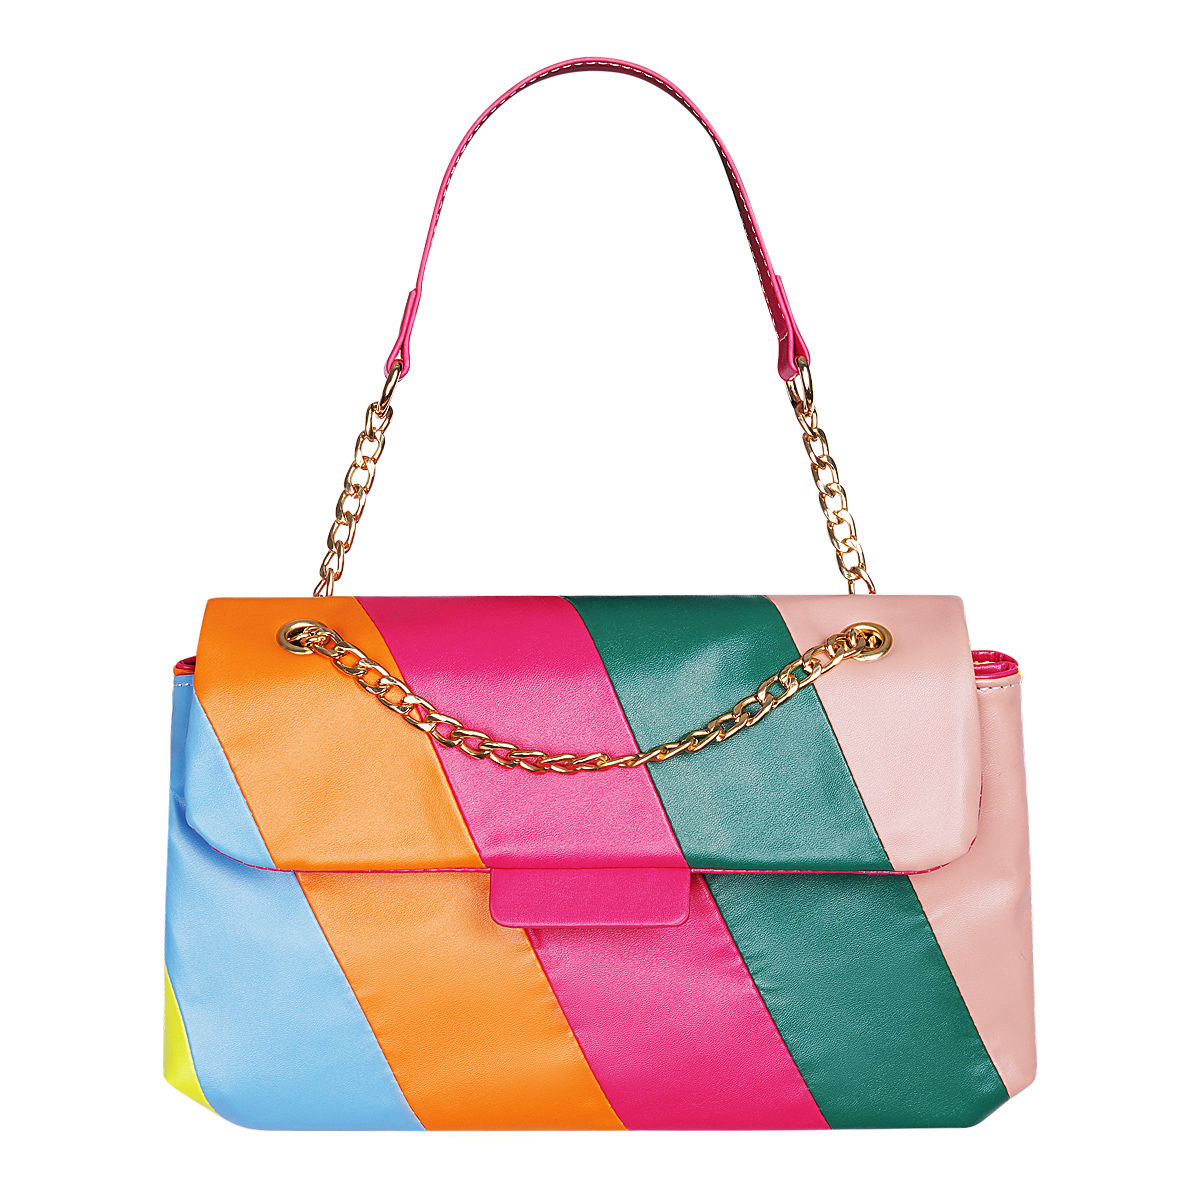 Schoudertas Rainbow fuchsia groen roze oranje blauw trendy regenboog gekleurde dames tassen kopen bestellen kettinghengsel